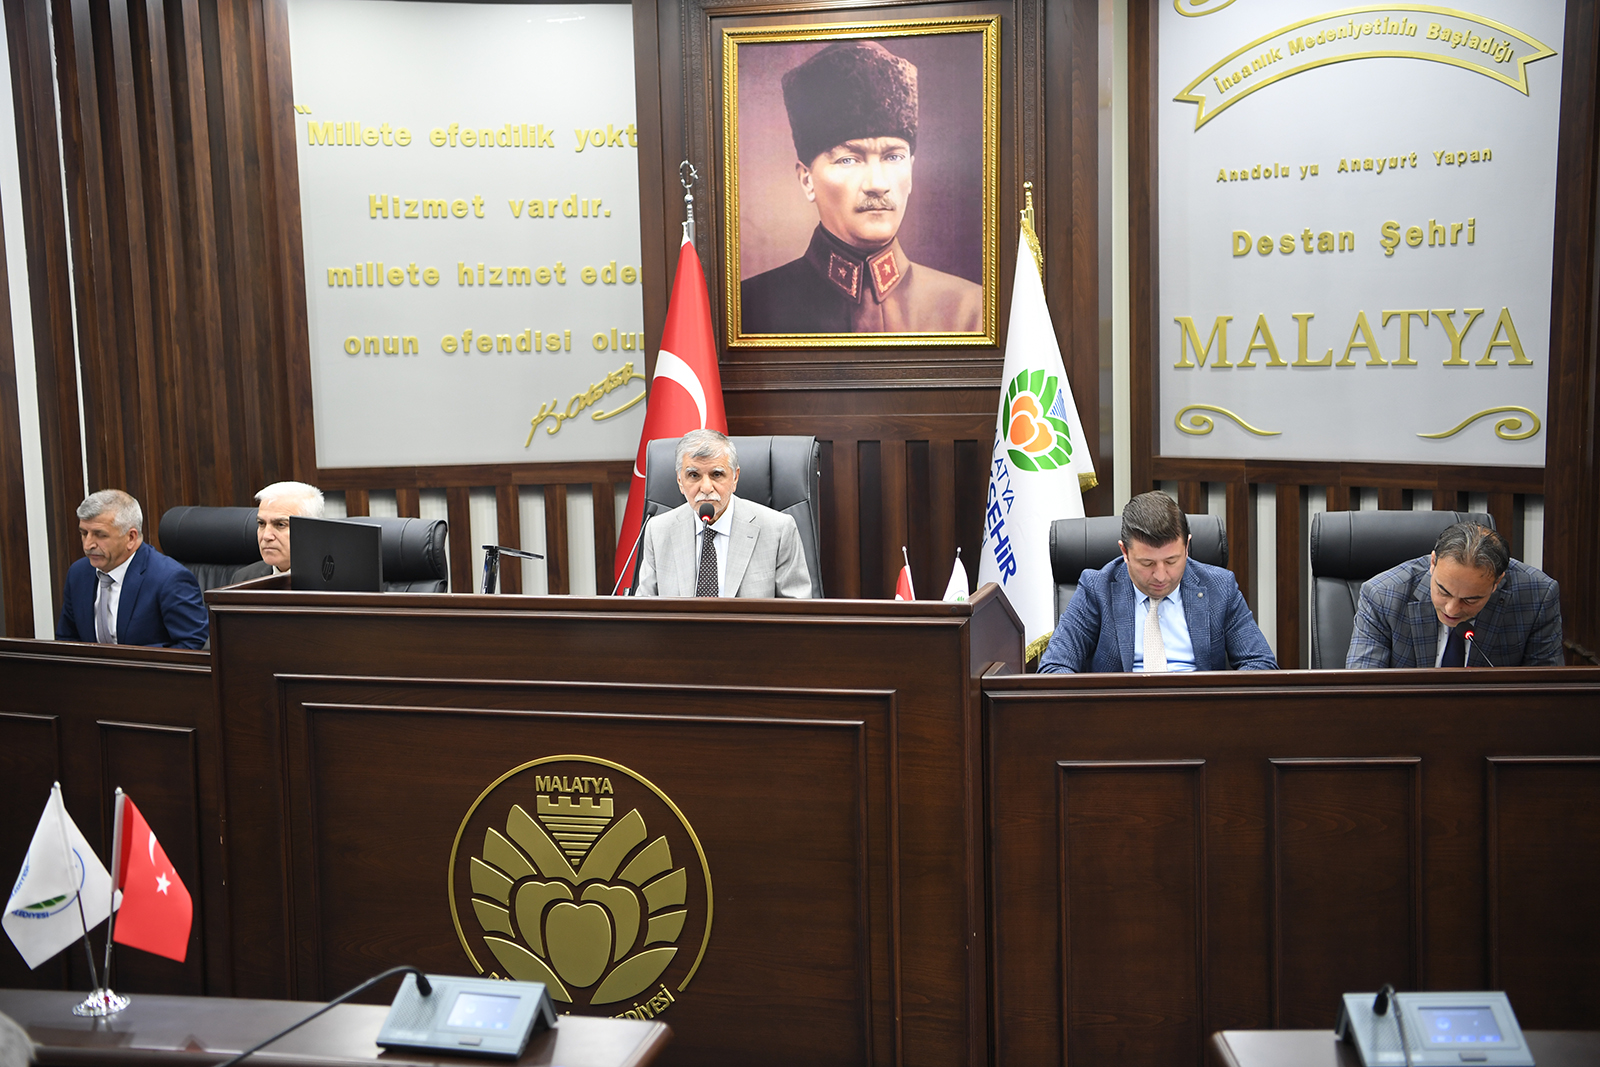 Malatya Büyükşehir Belediyesi Meclisi’nin ekim ayı toplantıları sürüyor